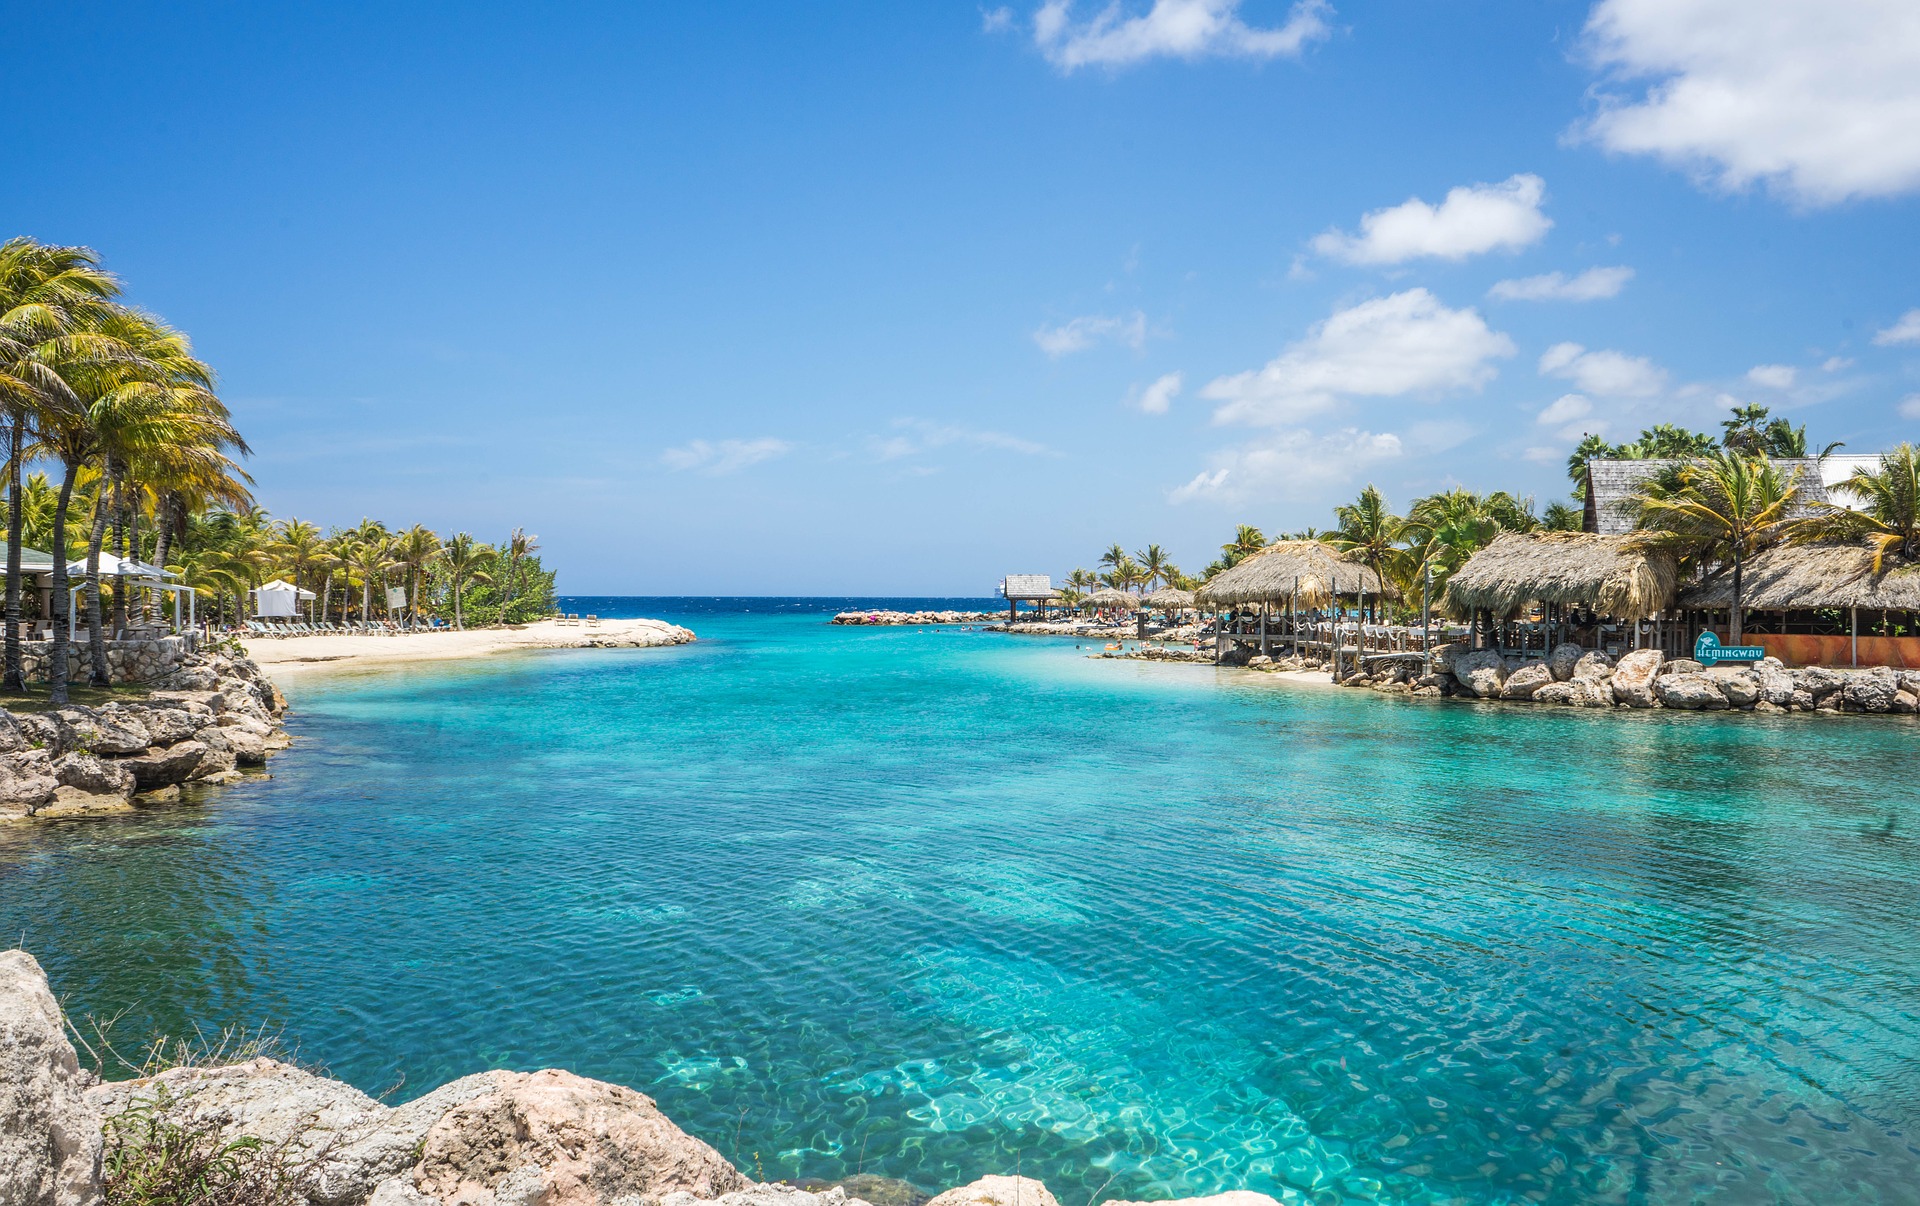 Vacances dans les Antilles : nos conseils pour un voyage réussi